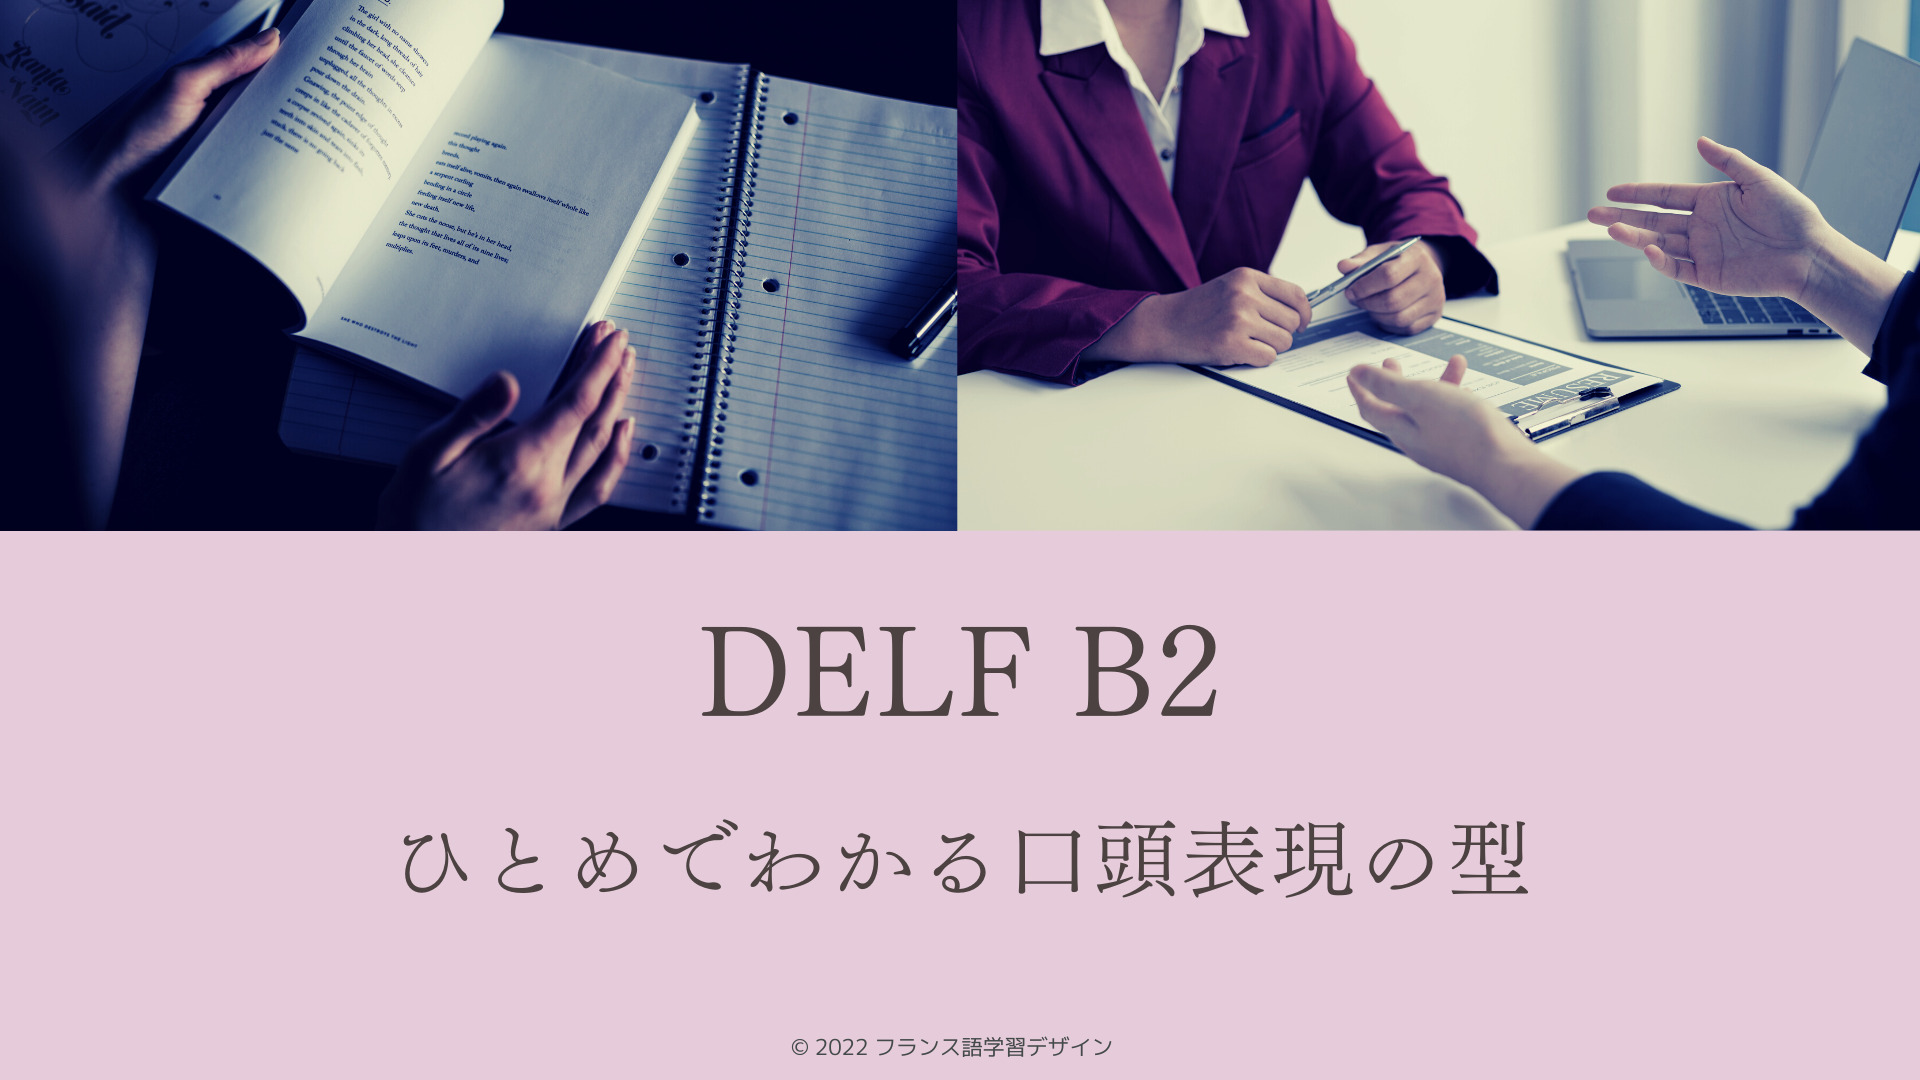 DELF B2 ひとめでわかる口頭表現の型